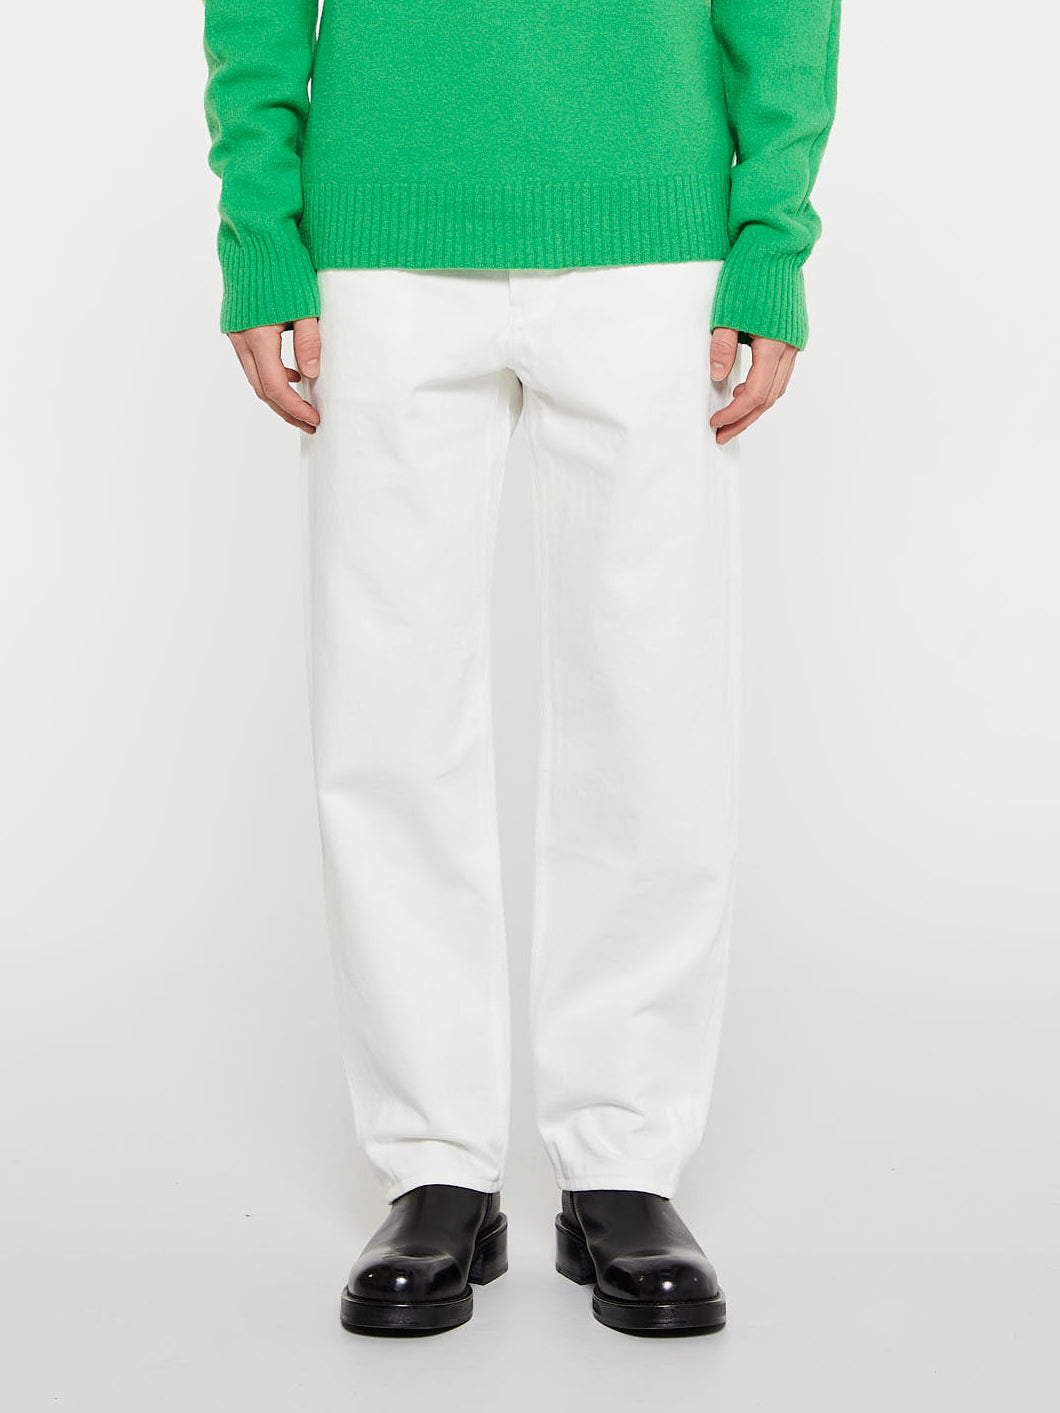 Jil Sander - Standard Denim Trousers in Cosmic Latte